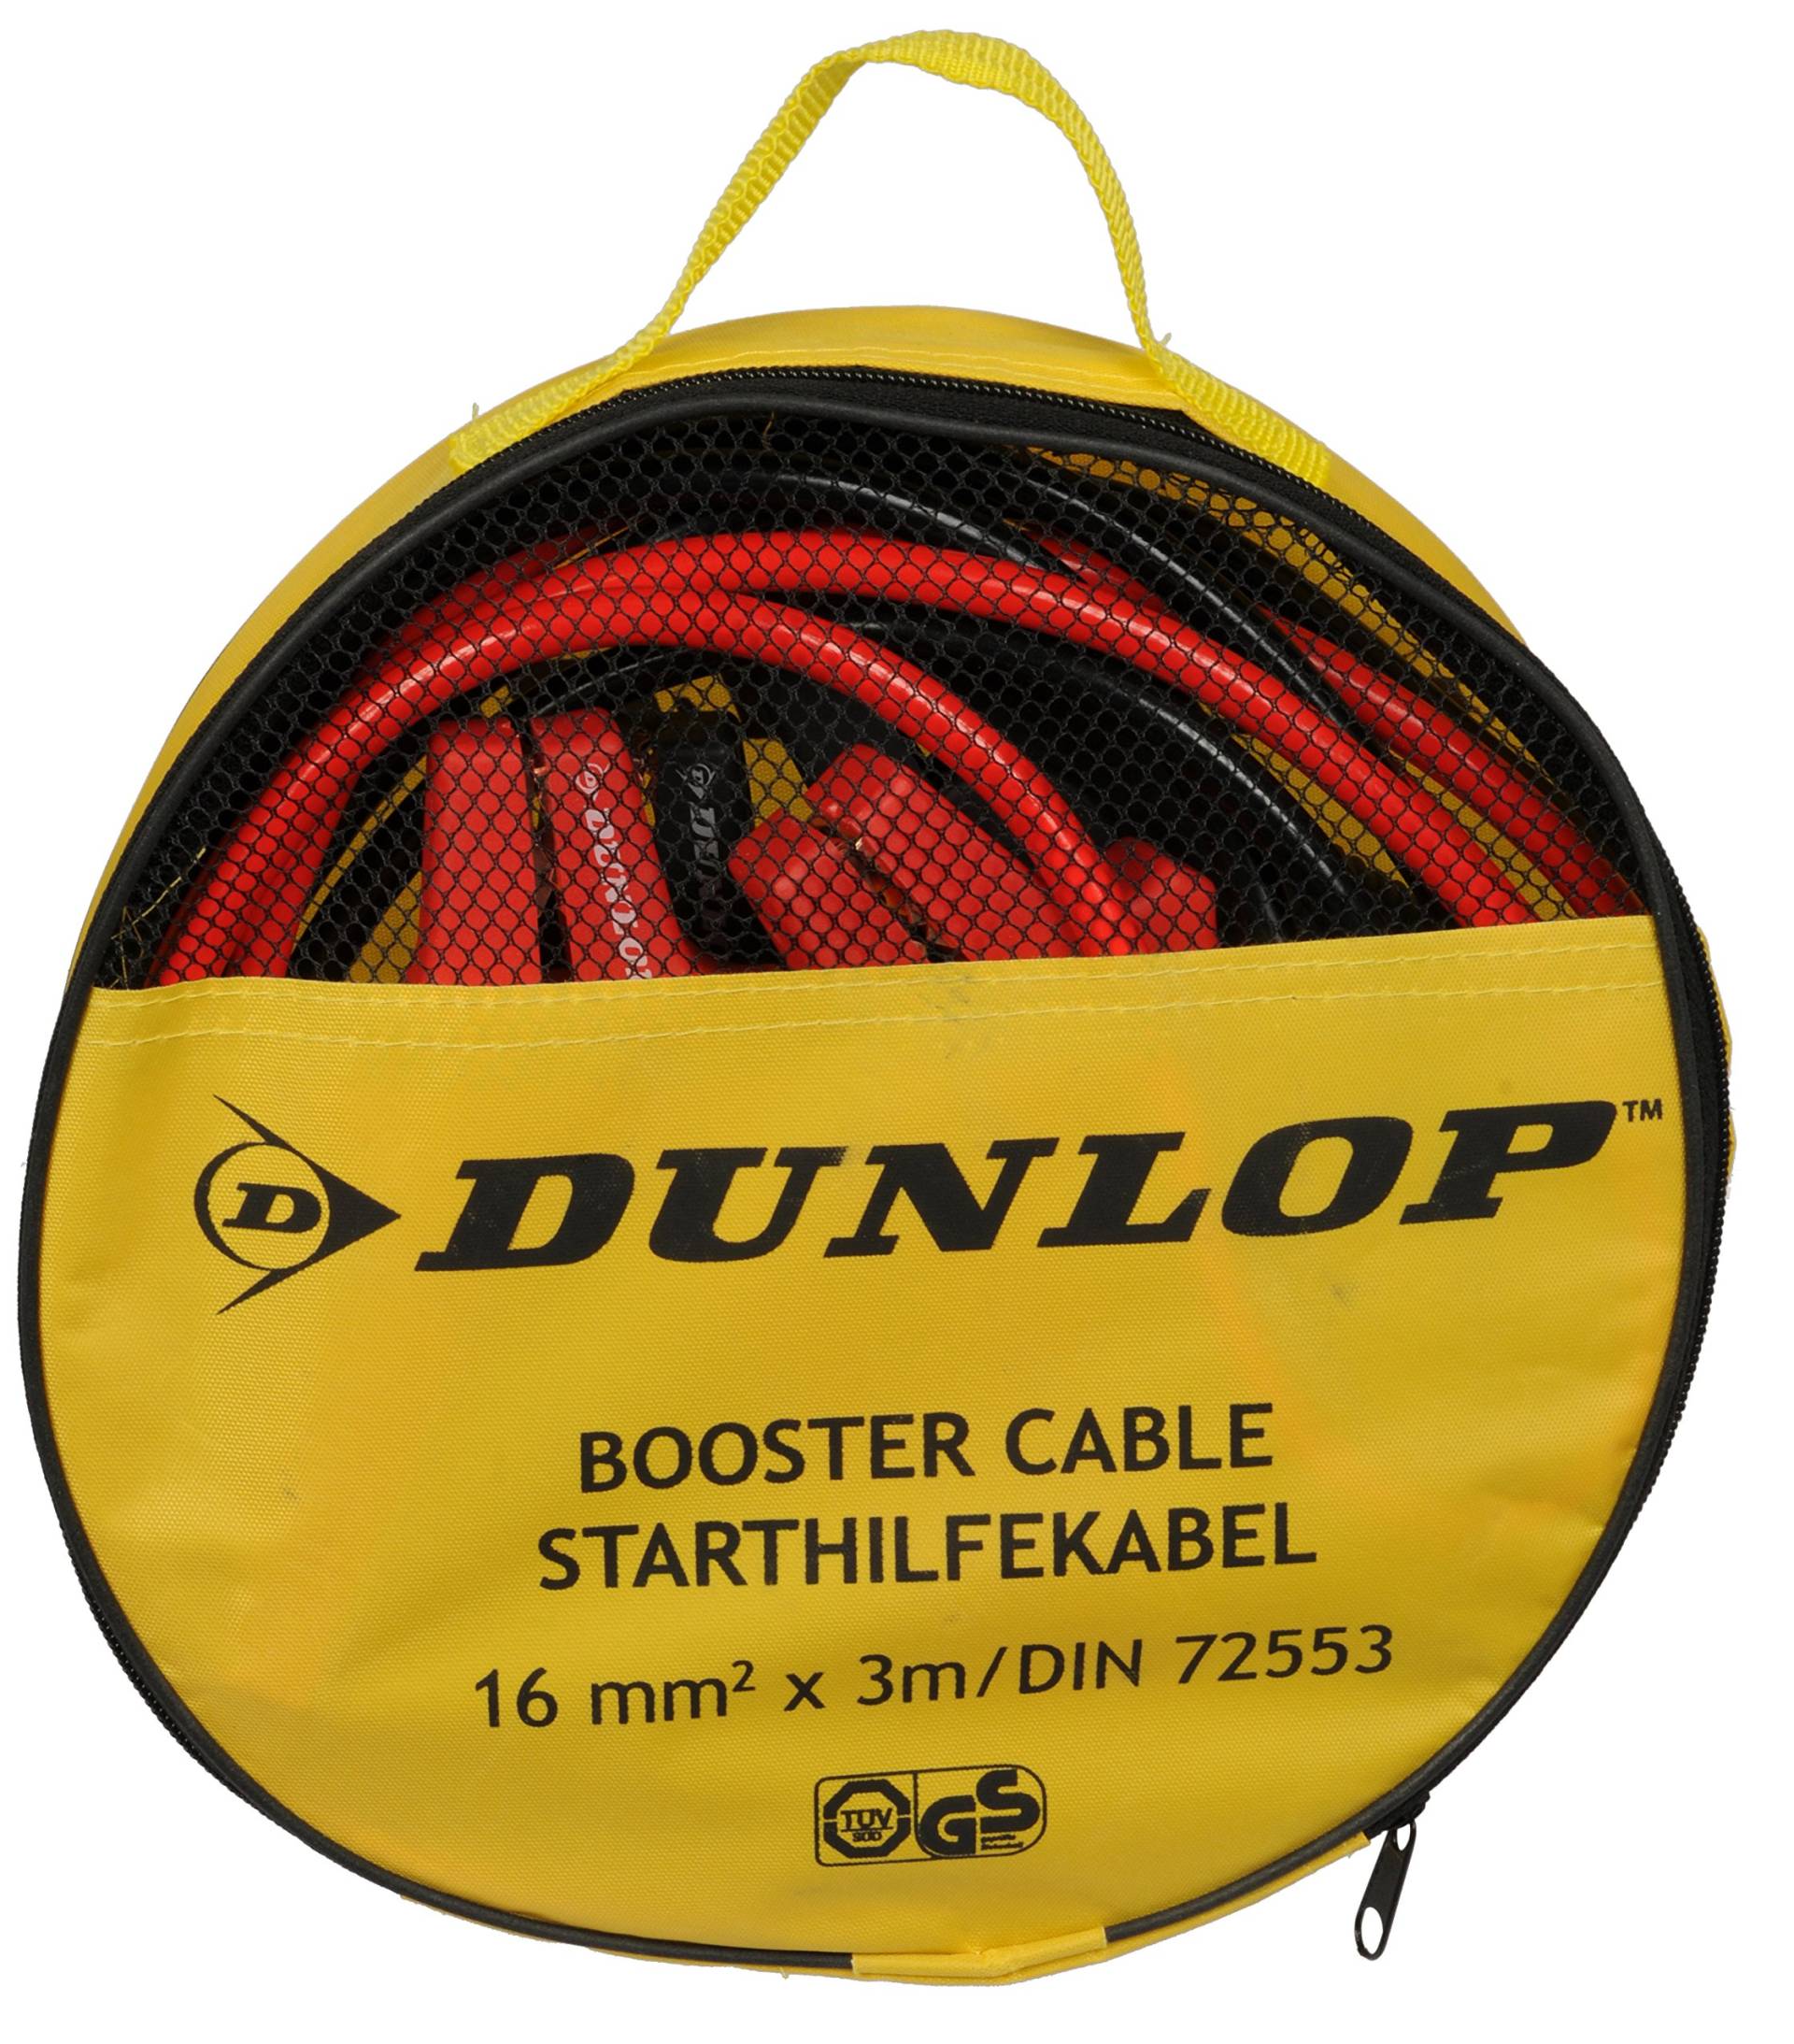 Dunlop 41855 Starthilfekabel in Aufbewahrungstasche, 16 mm2 x 3M/DIN 72553 von Dunlop